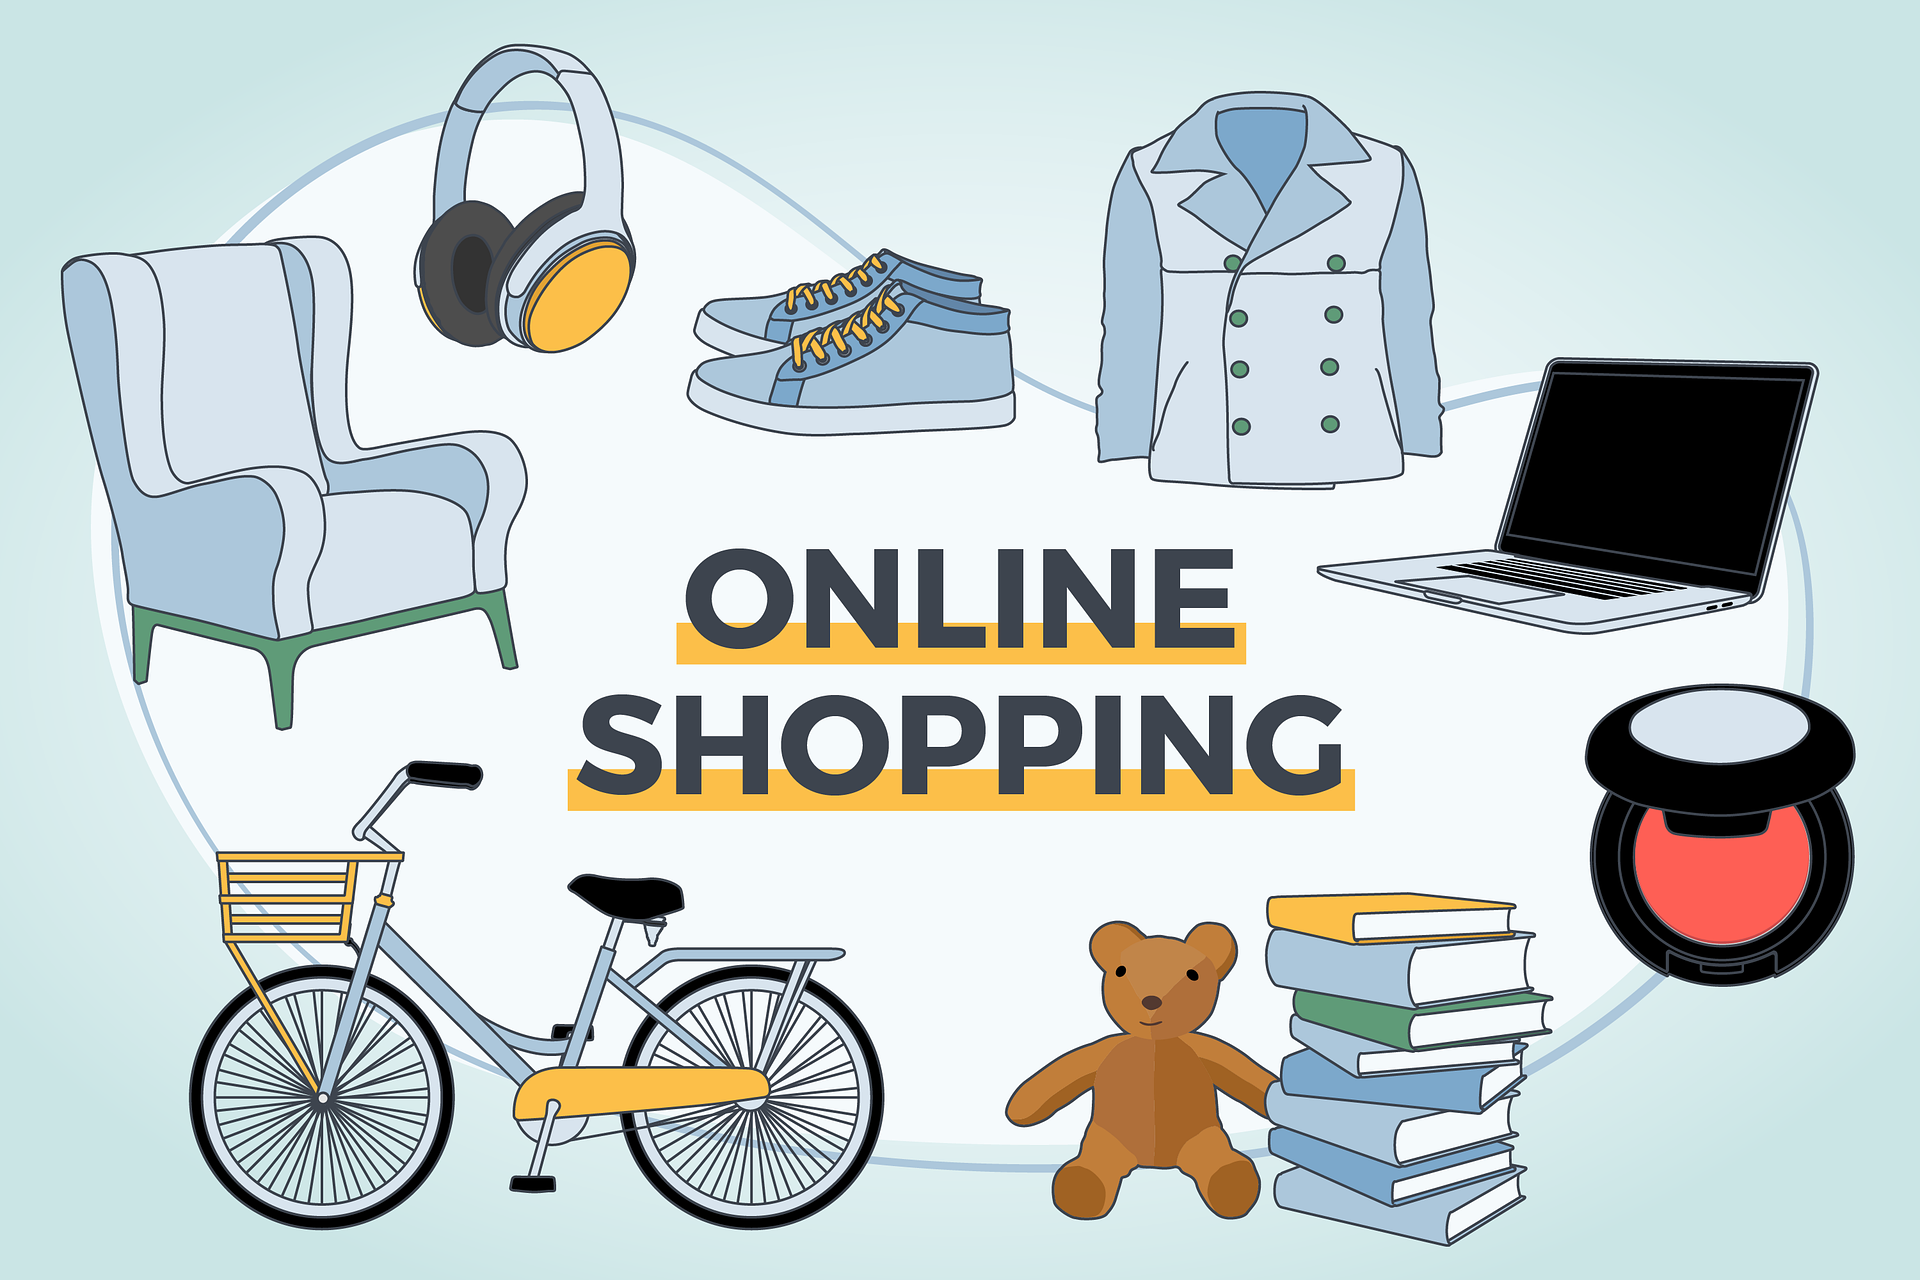 “Pozuelo de compras online”, el nuevo Marketplace dirigido a los comercios de Pozuelo de Alarcón